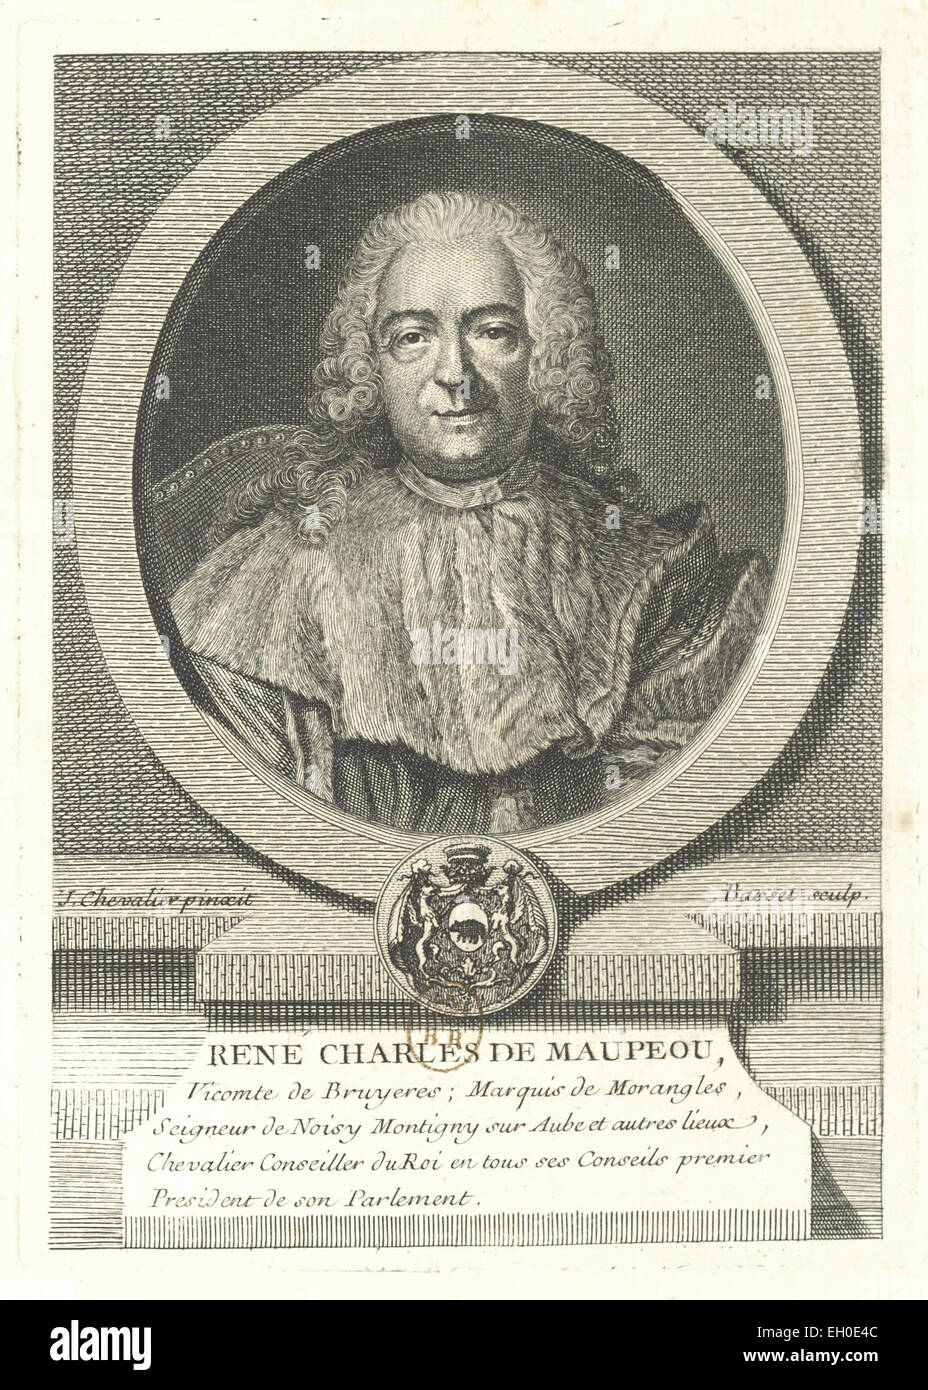 René Charles de Maupeou (1688 - 1755), magistrat, Premier président du Parlement de Paris, Chancelier de France, Guardasigilli Sous Louis XV. Foto Stock